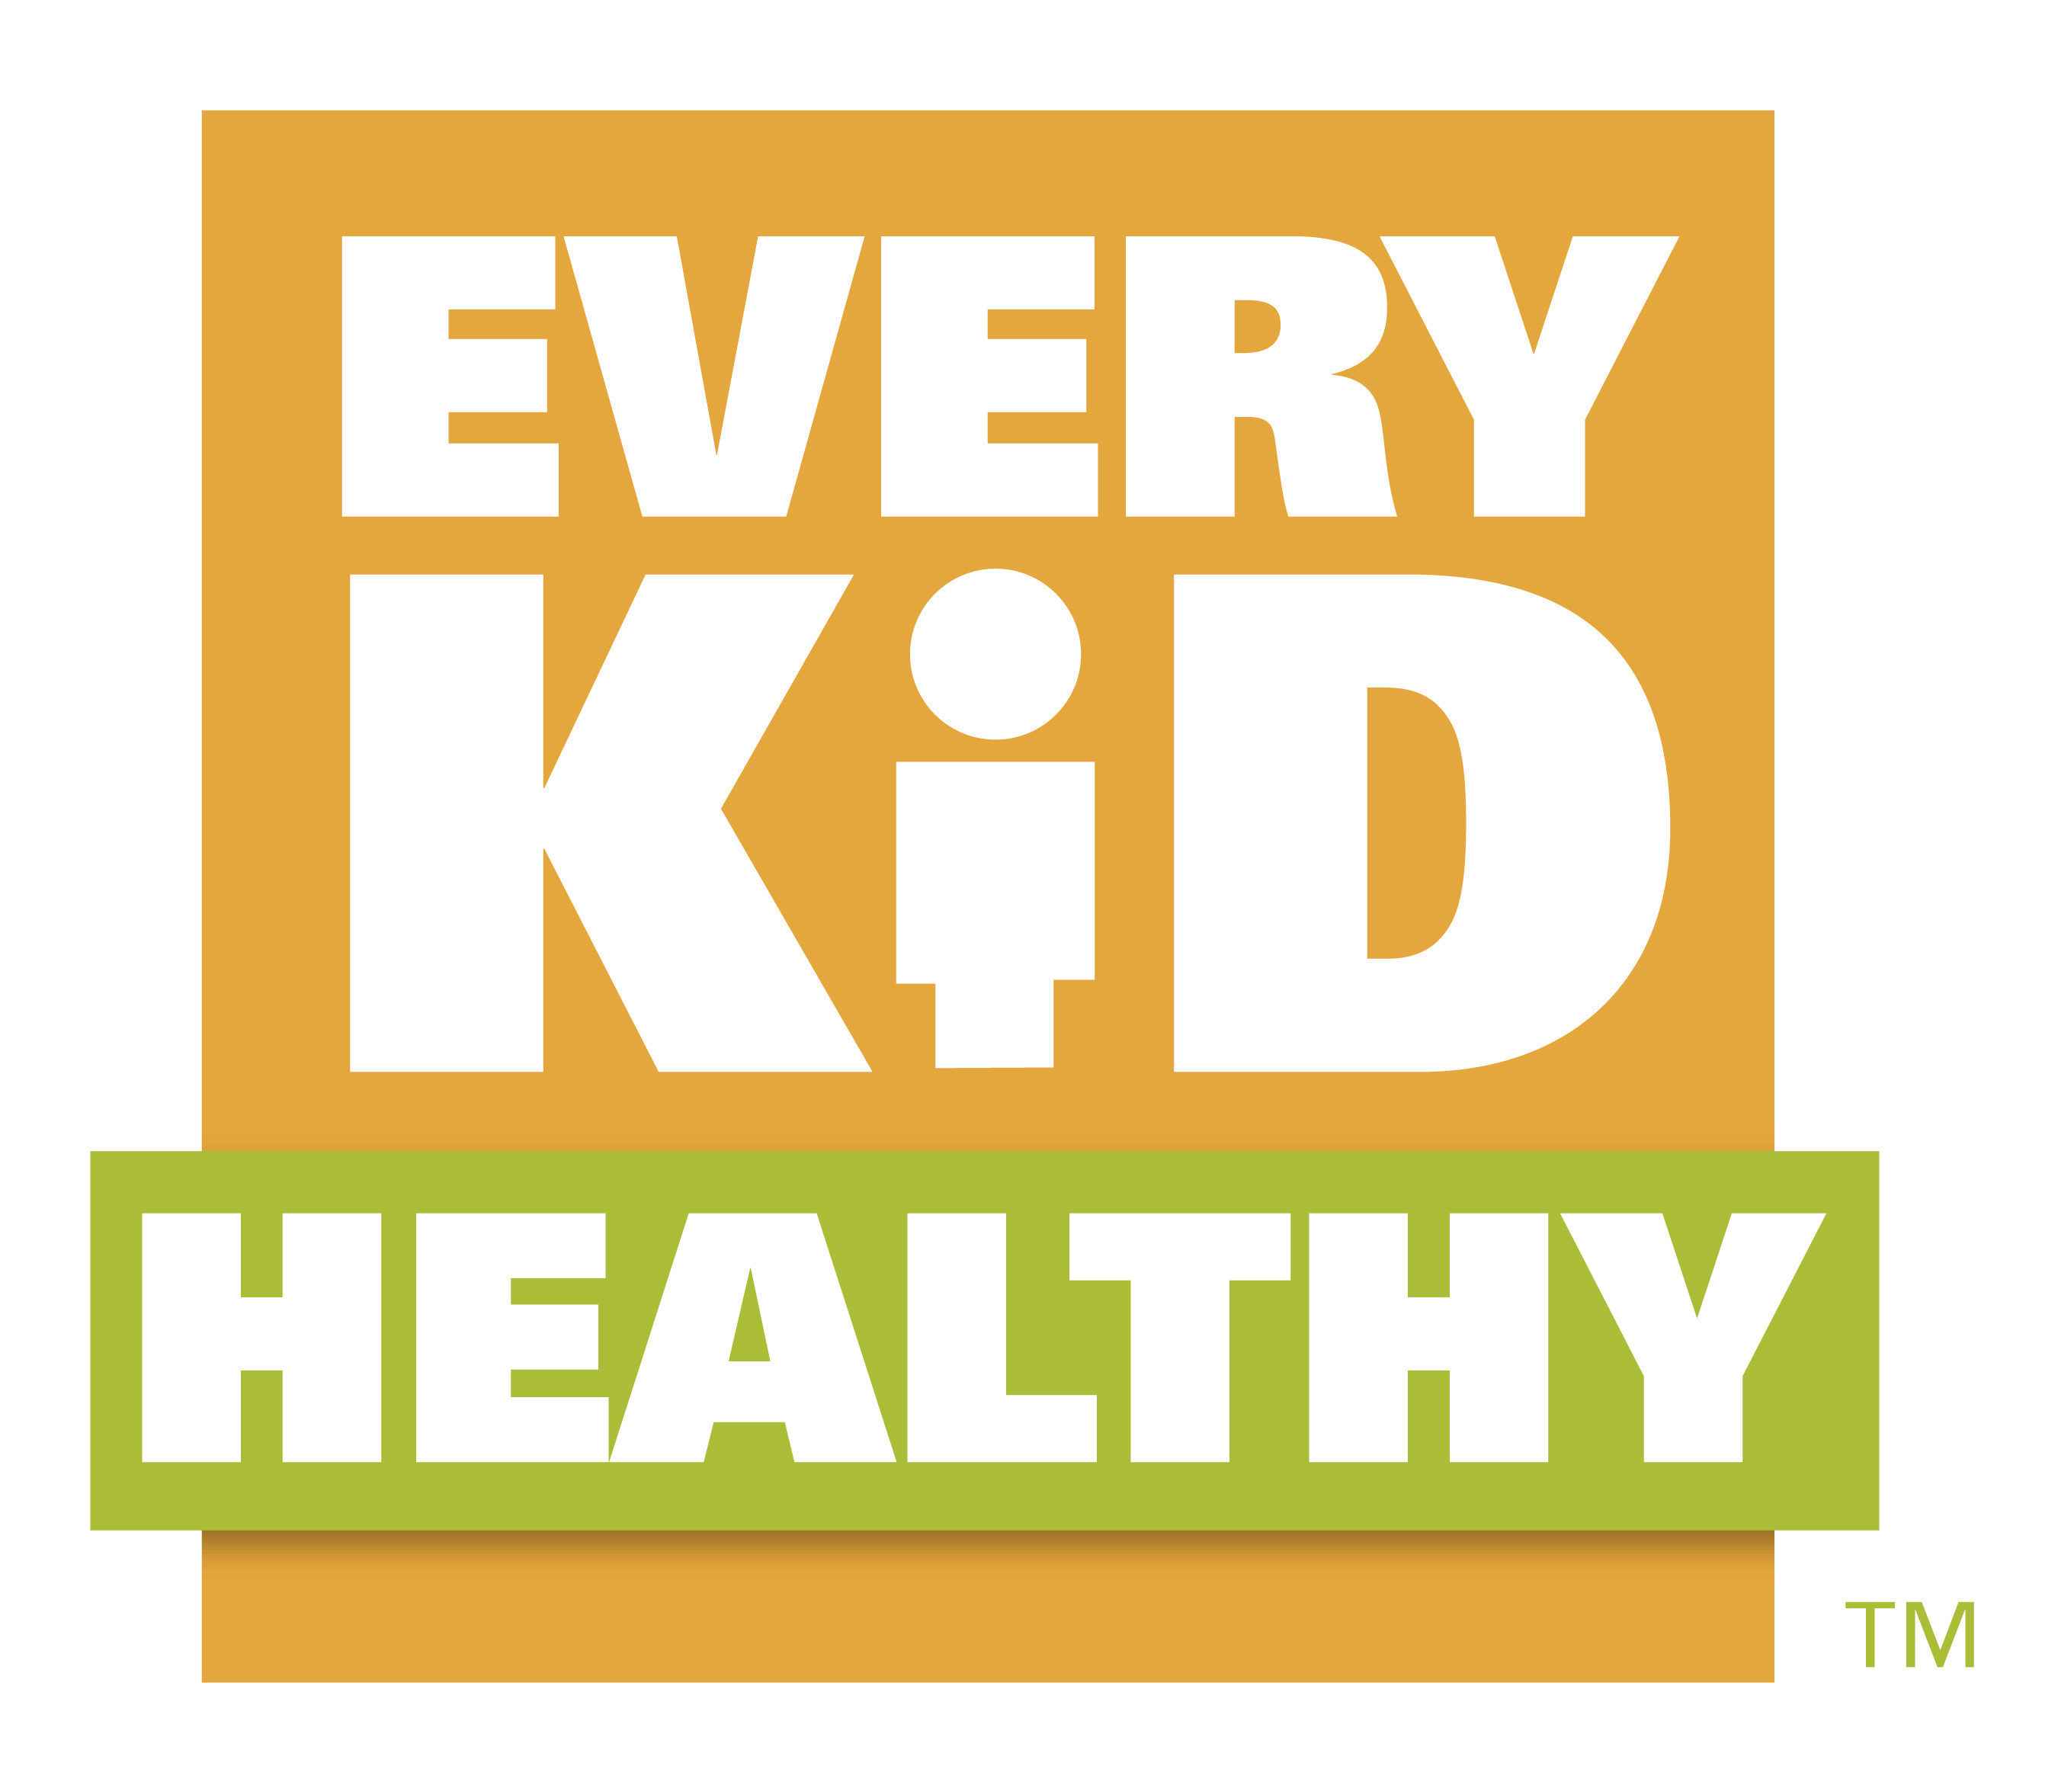 Every Kid Healthy Week, April 25-29, 2016